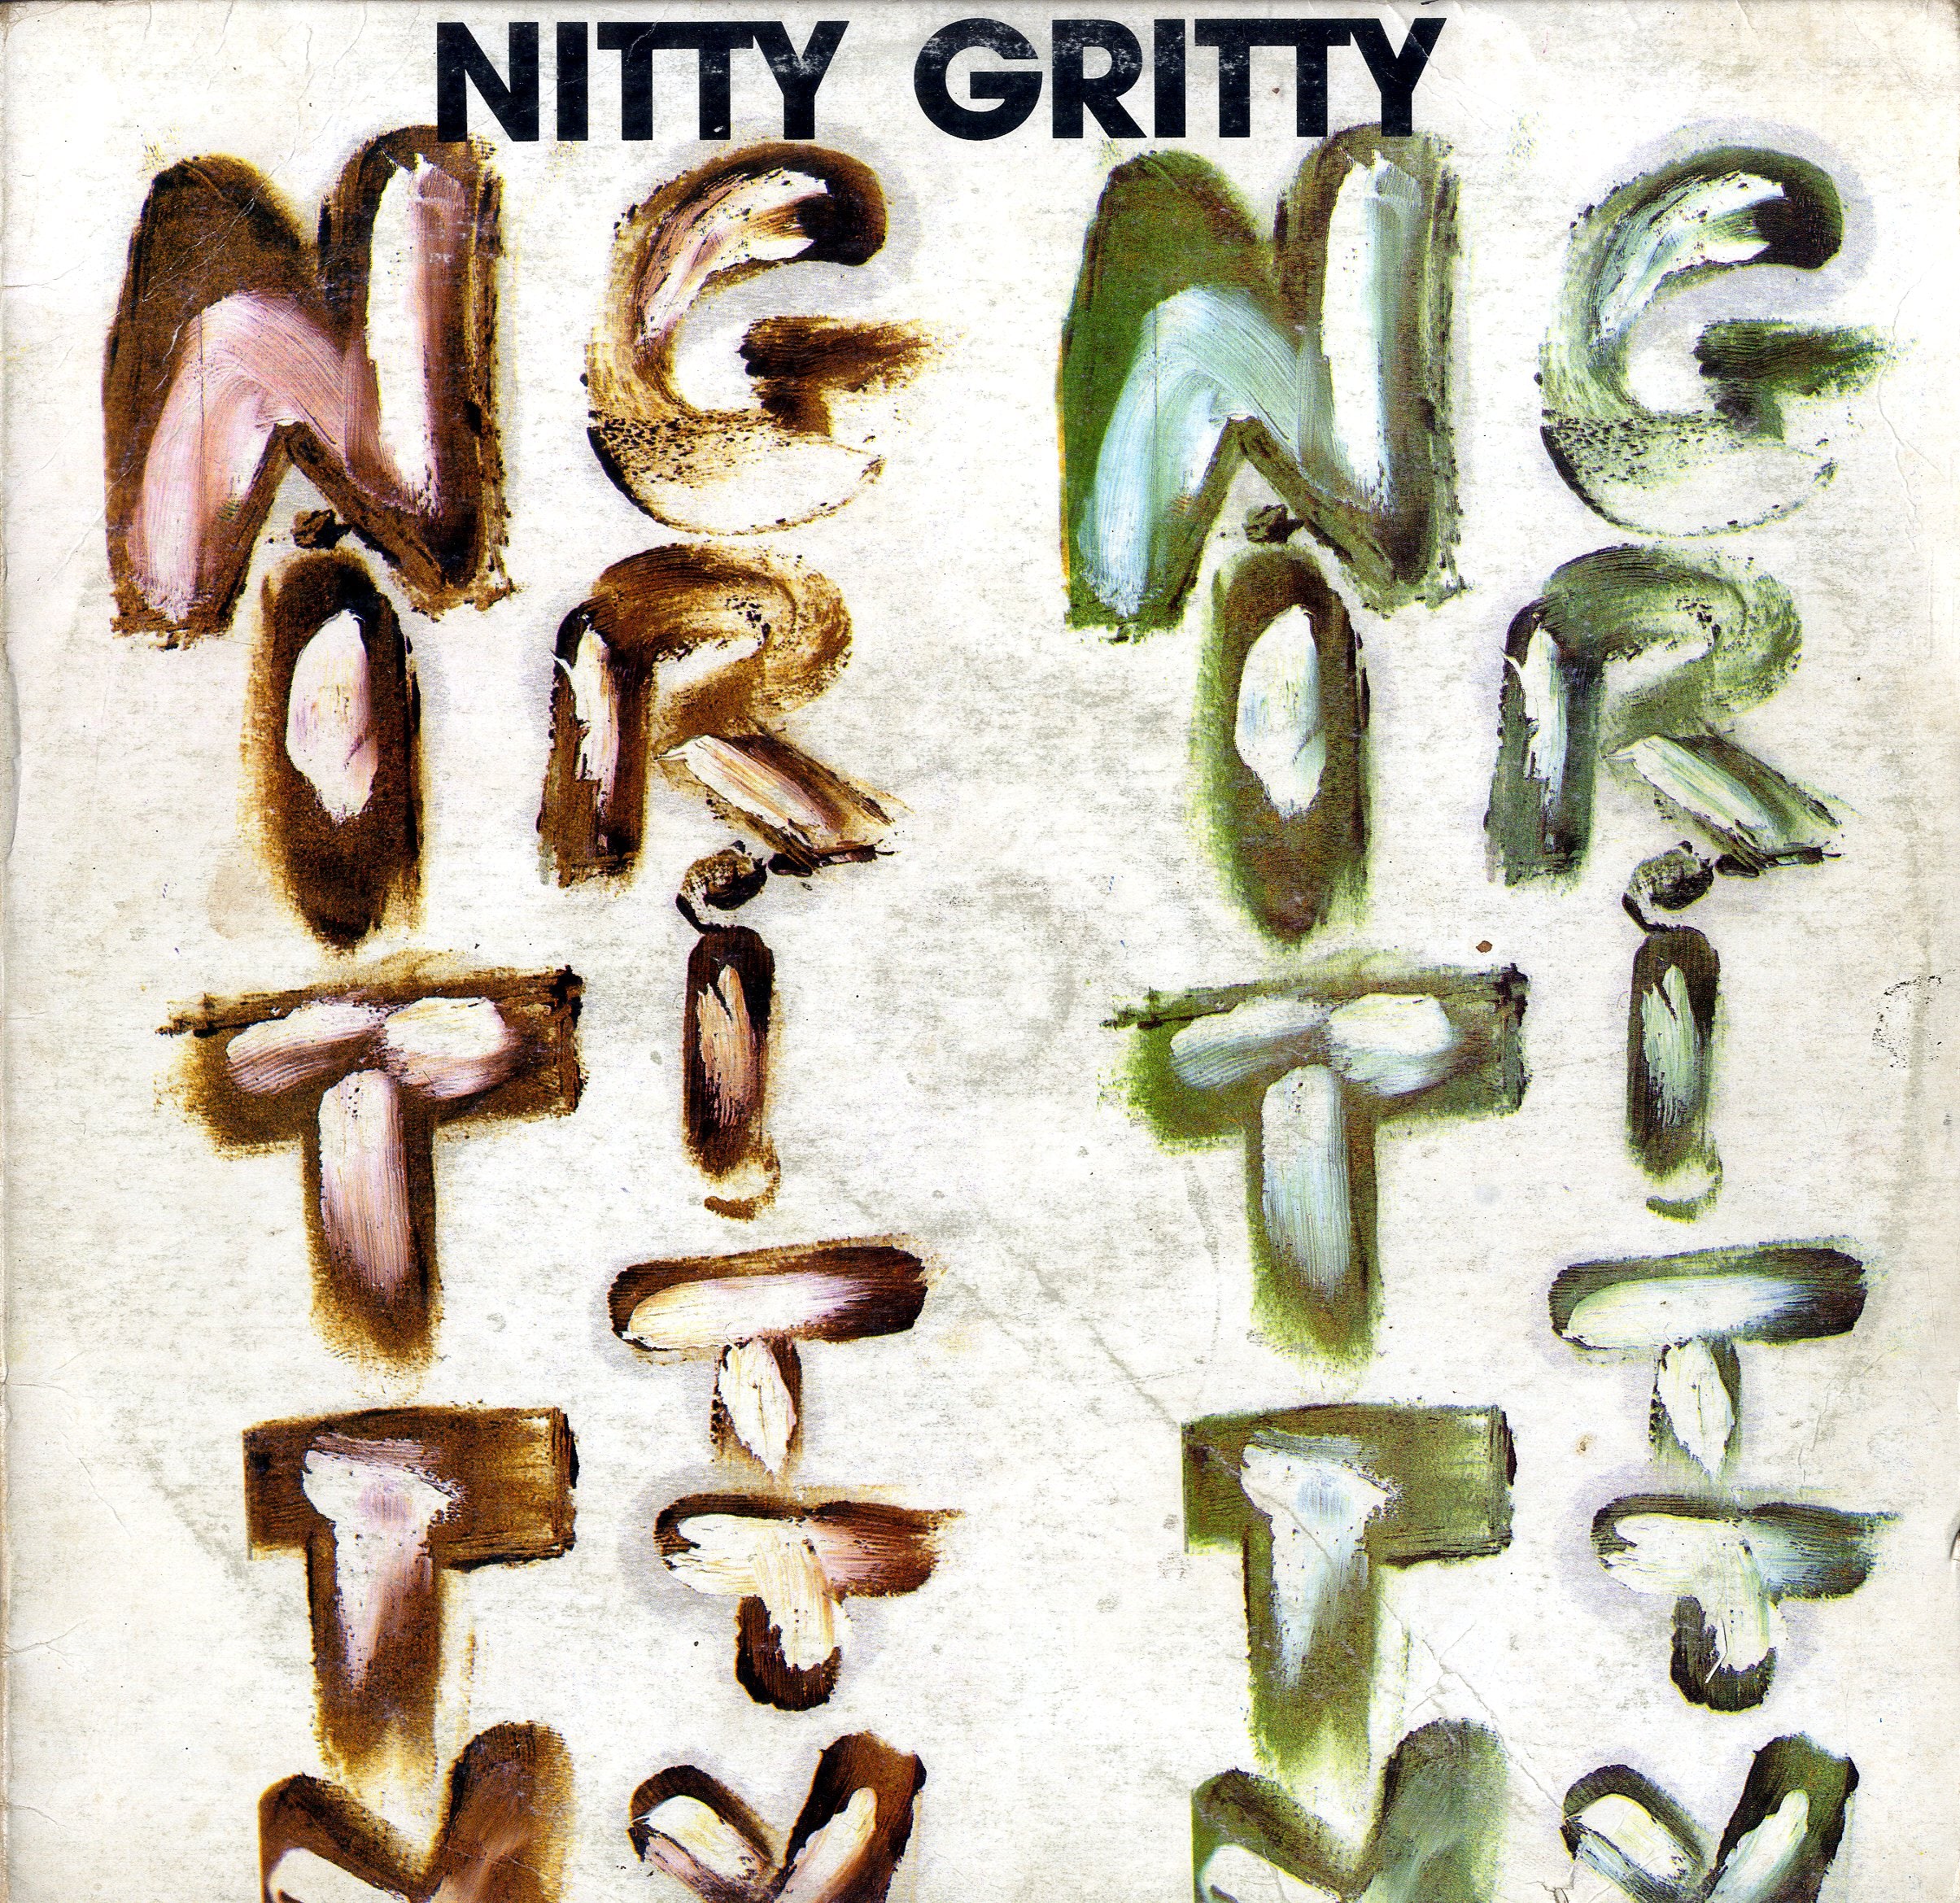 NITTY GRITTY [Nitty Gritty]